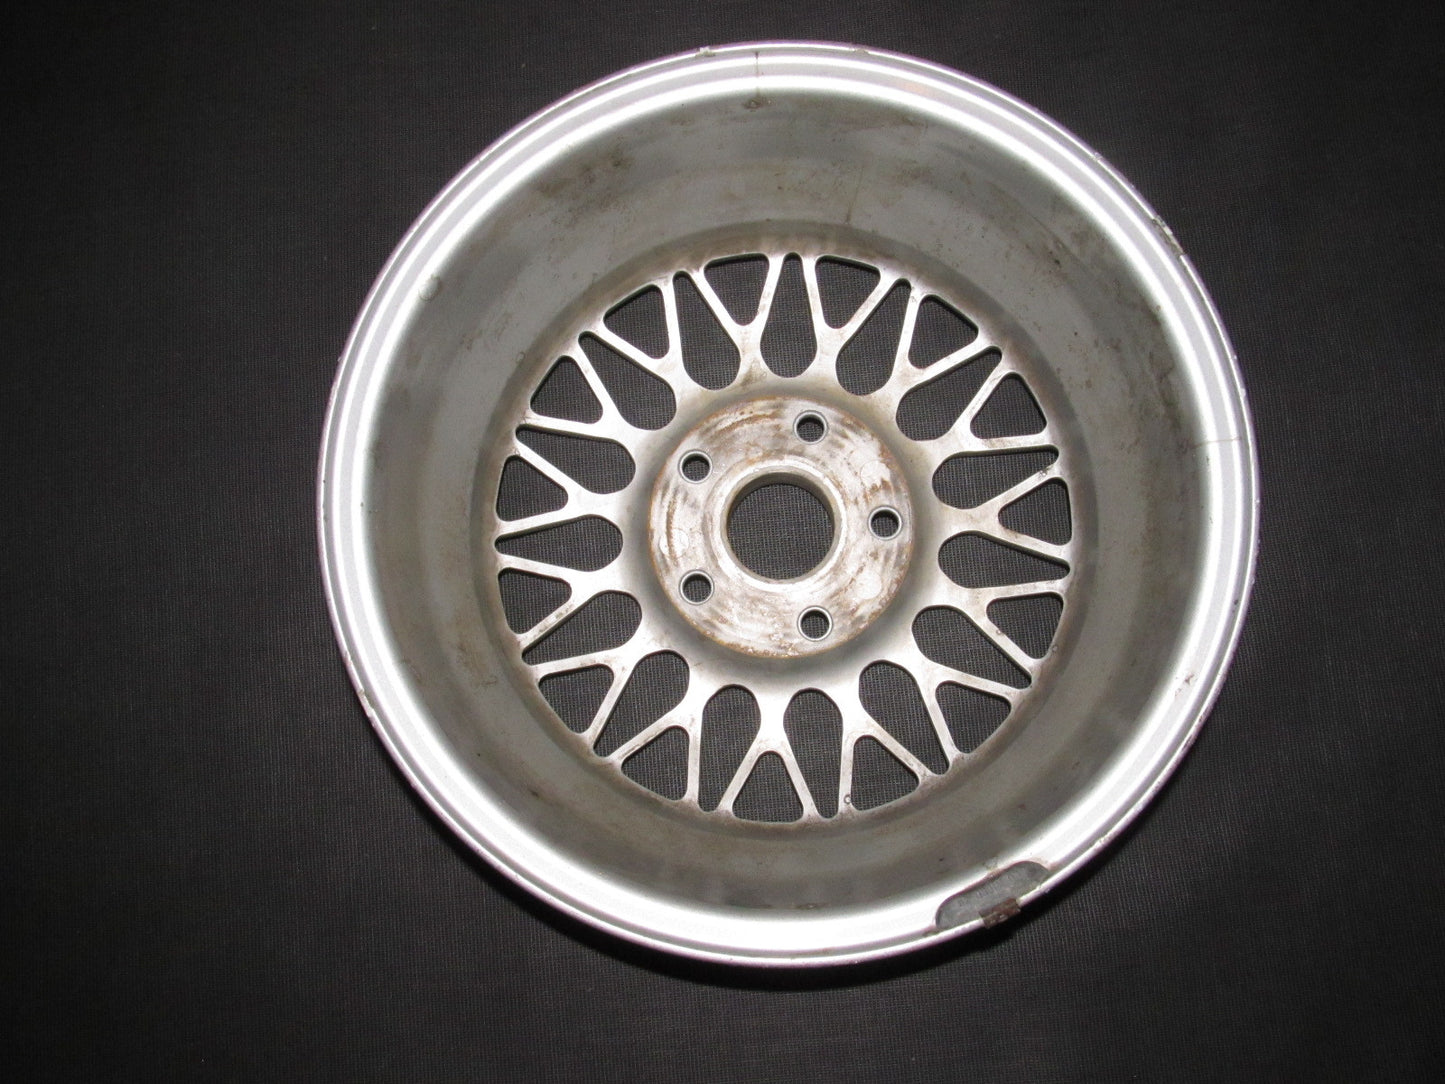 89 90 91 92 Mazda RX7 OEM BBS Wheel & Center Cap - 15 Inch